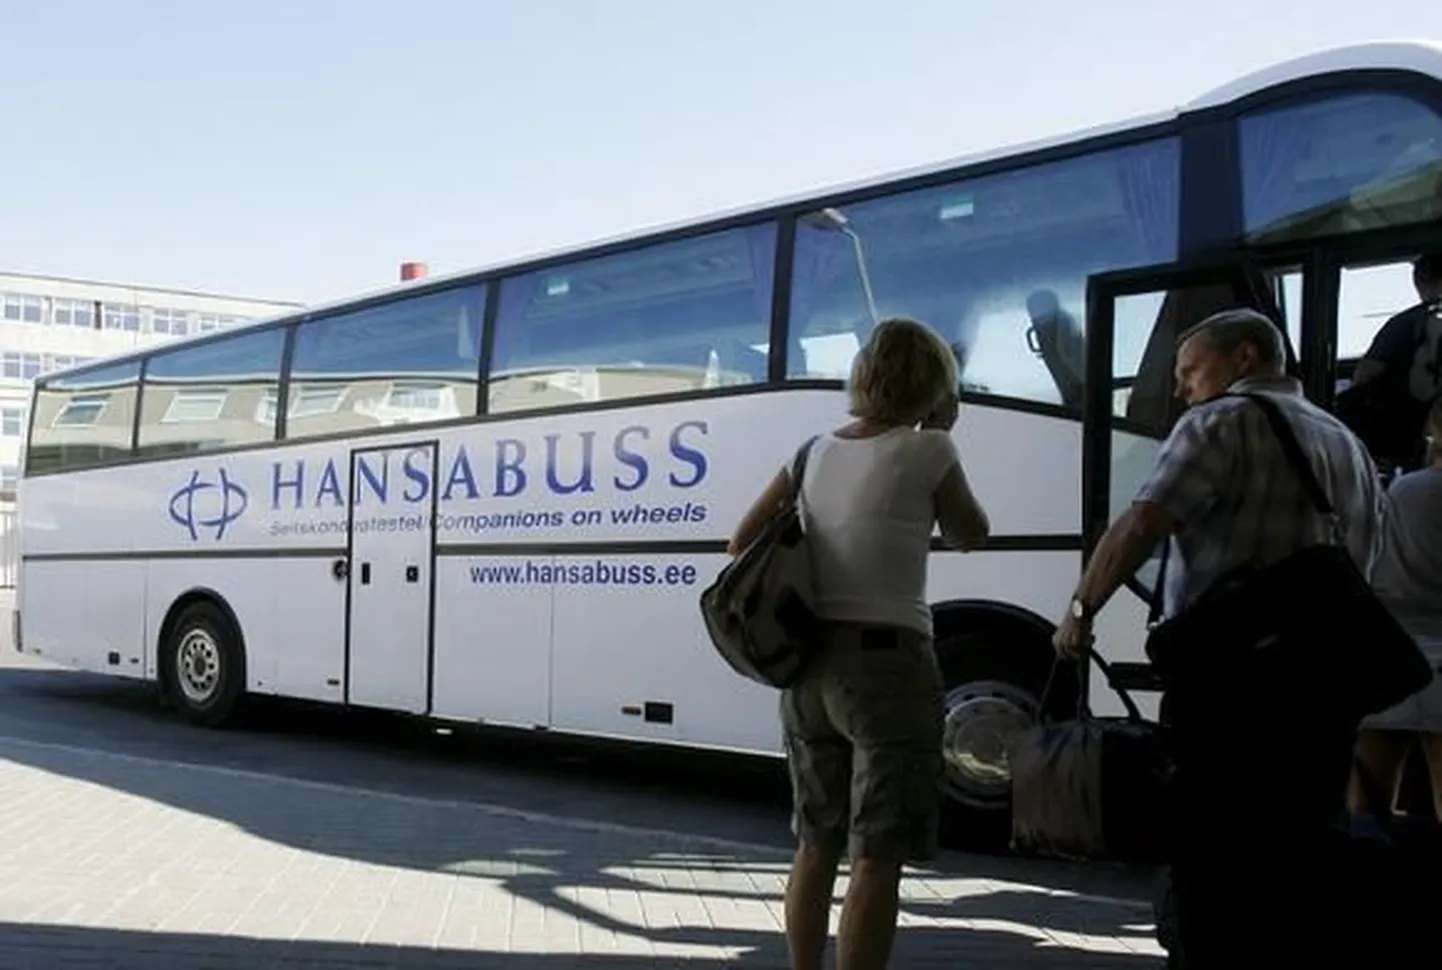 Hansabuss.